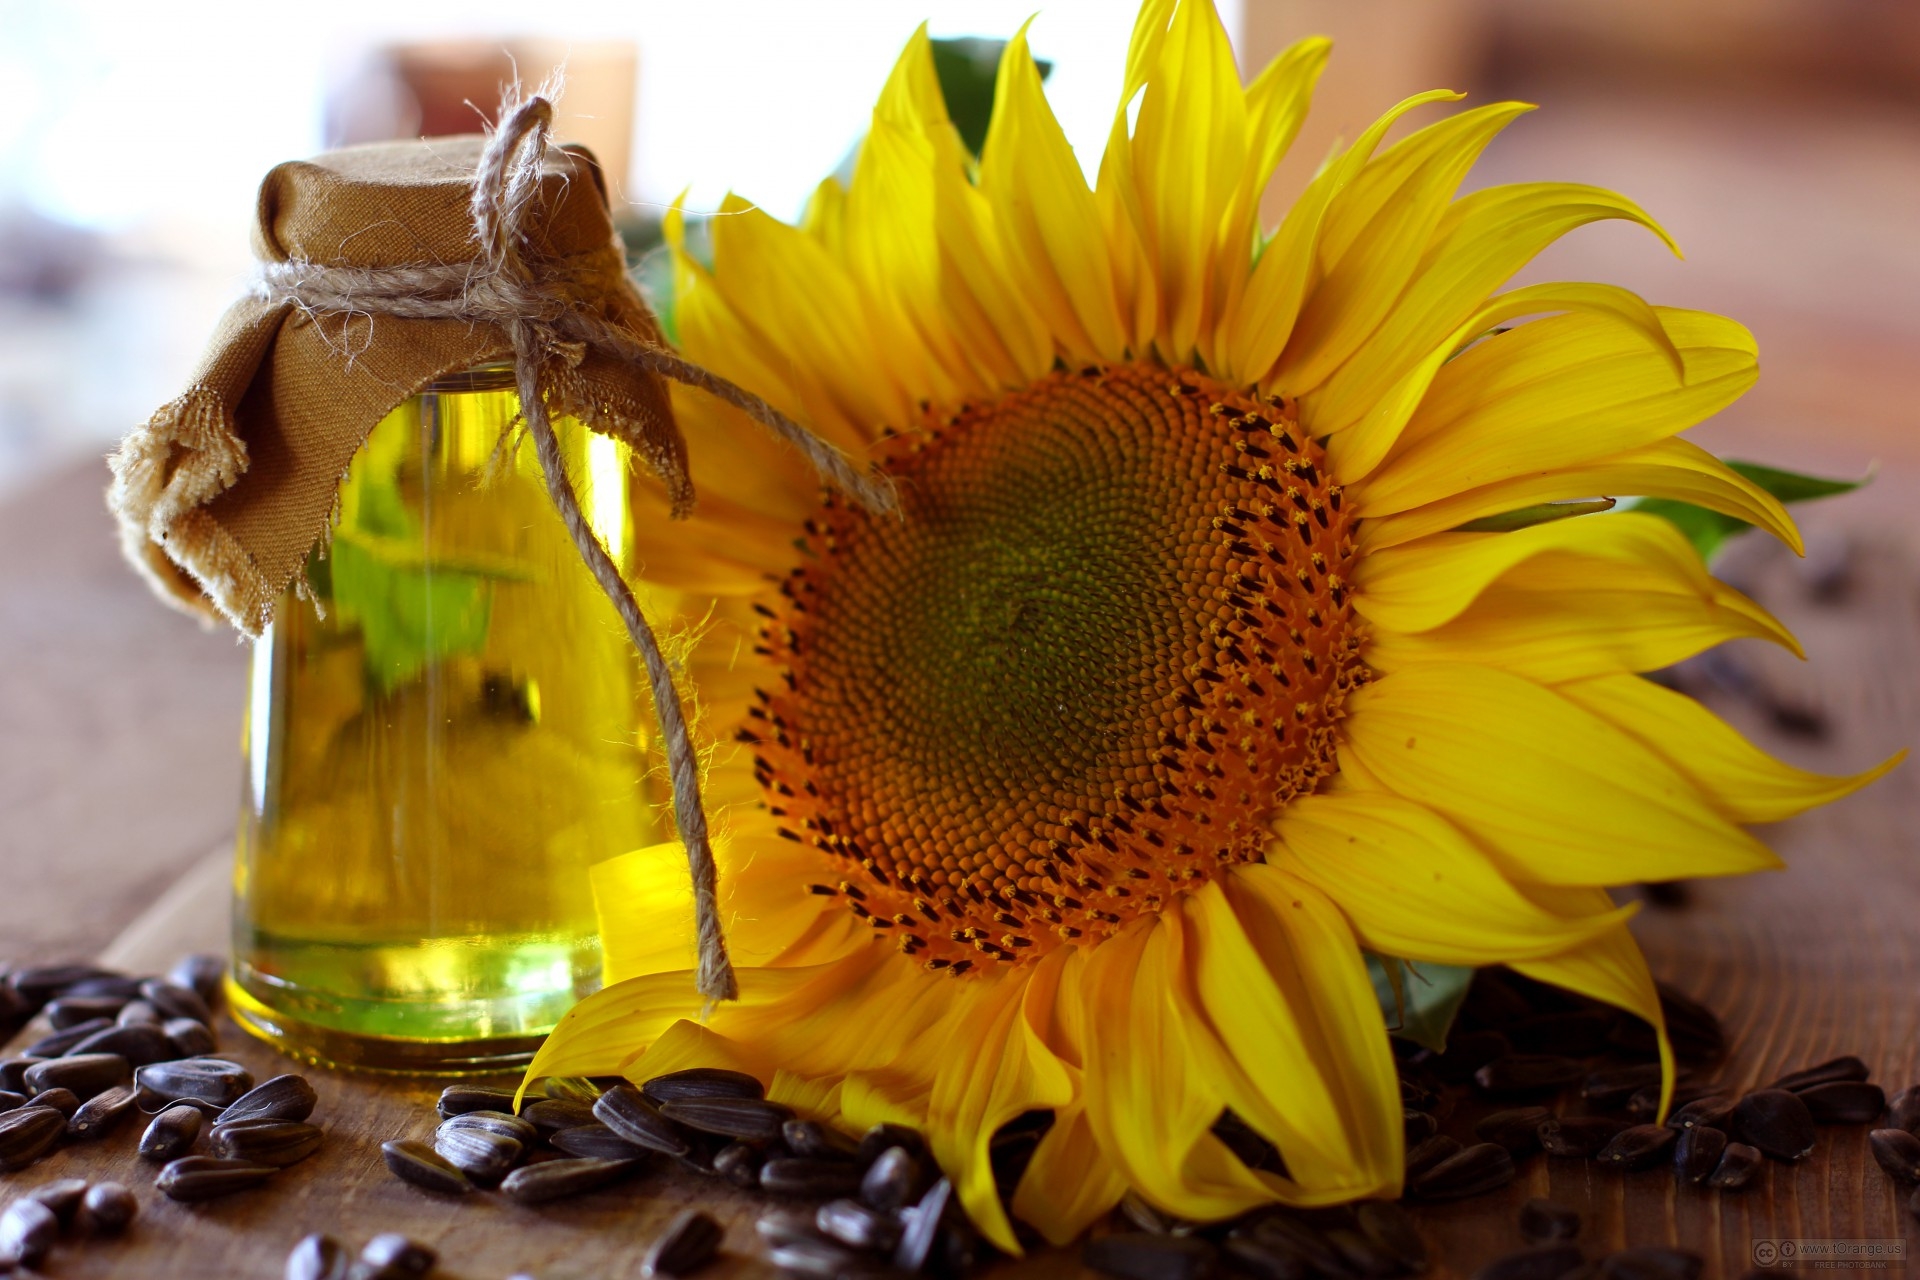 Ukraine hopes to increase demand for sunflower oil